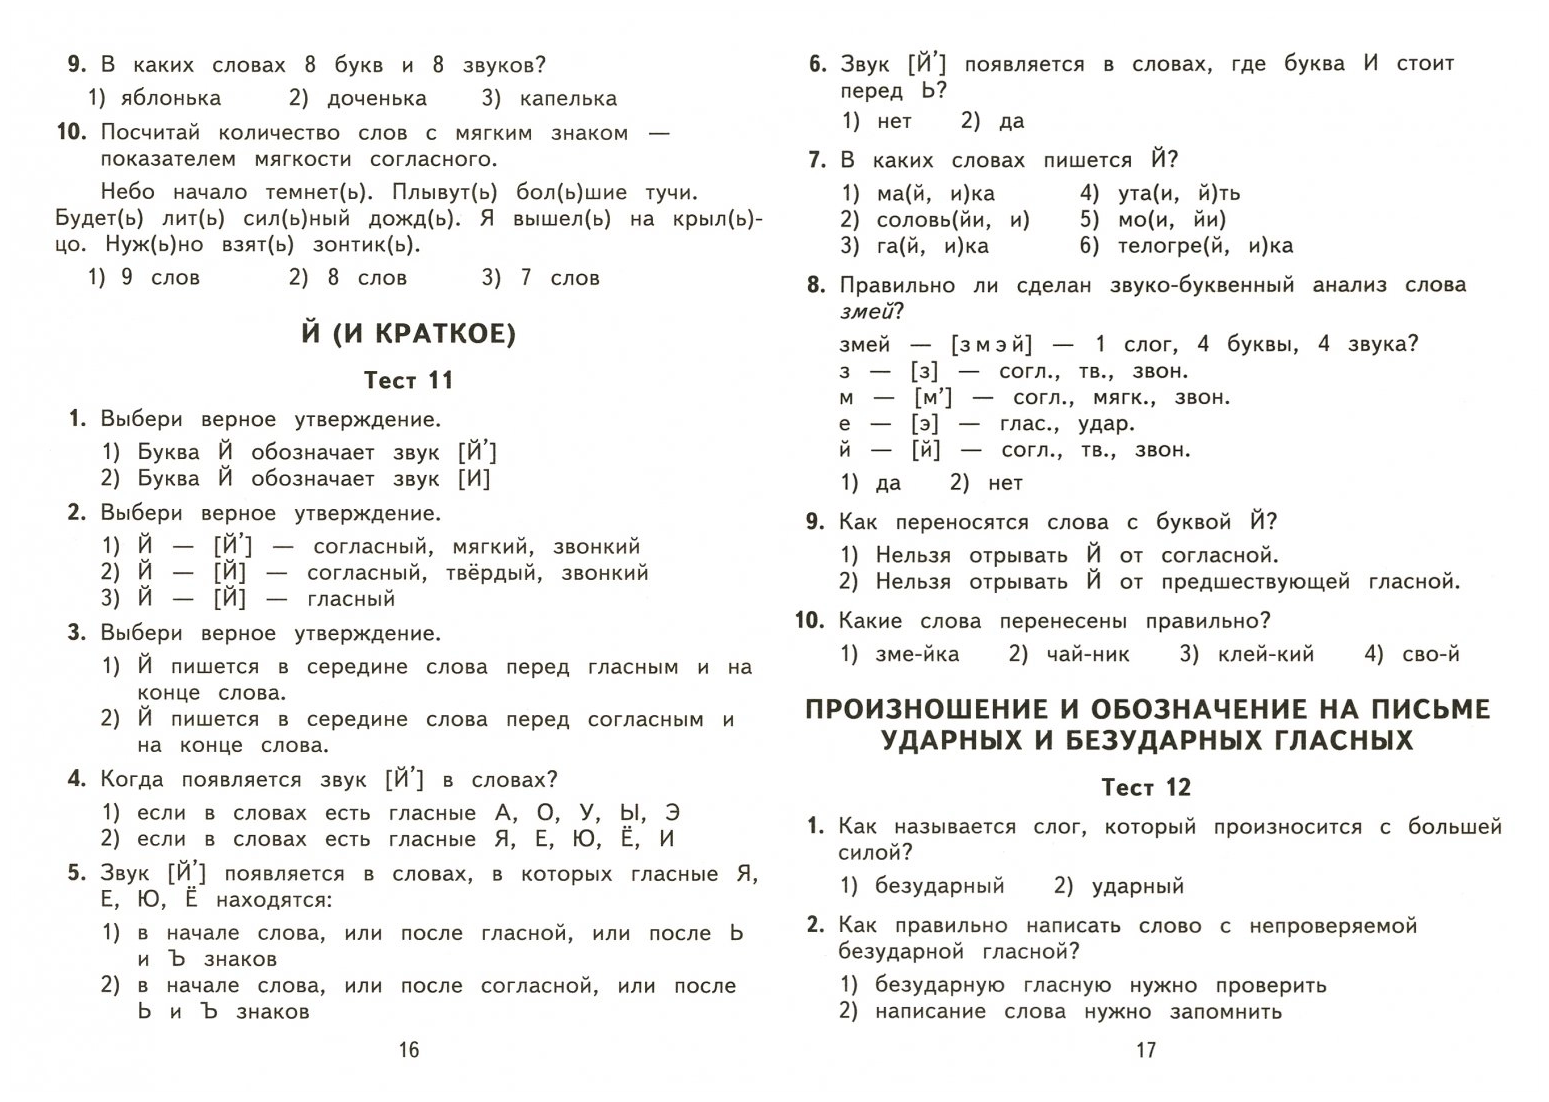 2500 тестовых заданий по русскому языку. 2 класс. Все темы. Все варианты заданий. Крупный шрифт - фото №3